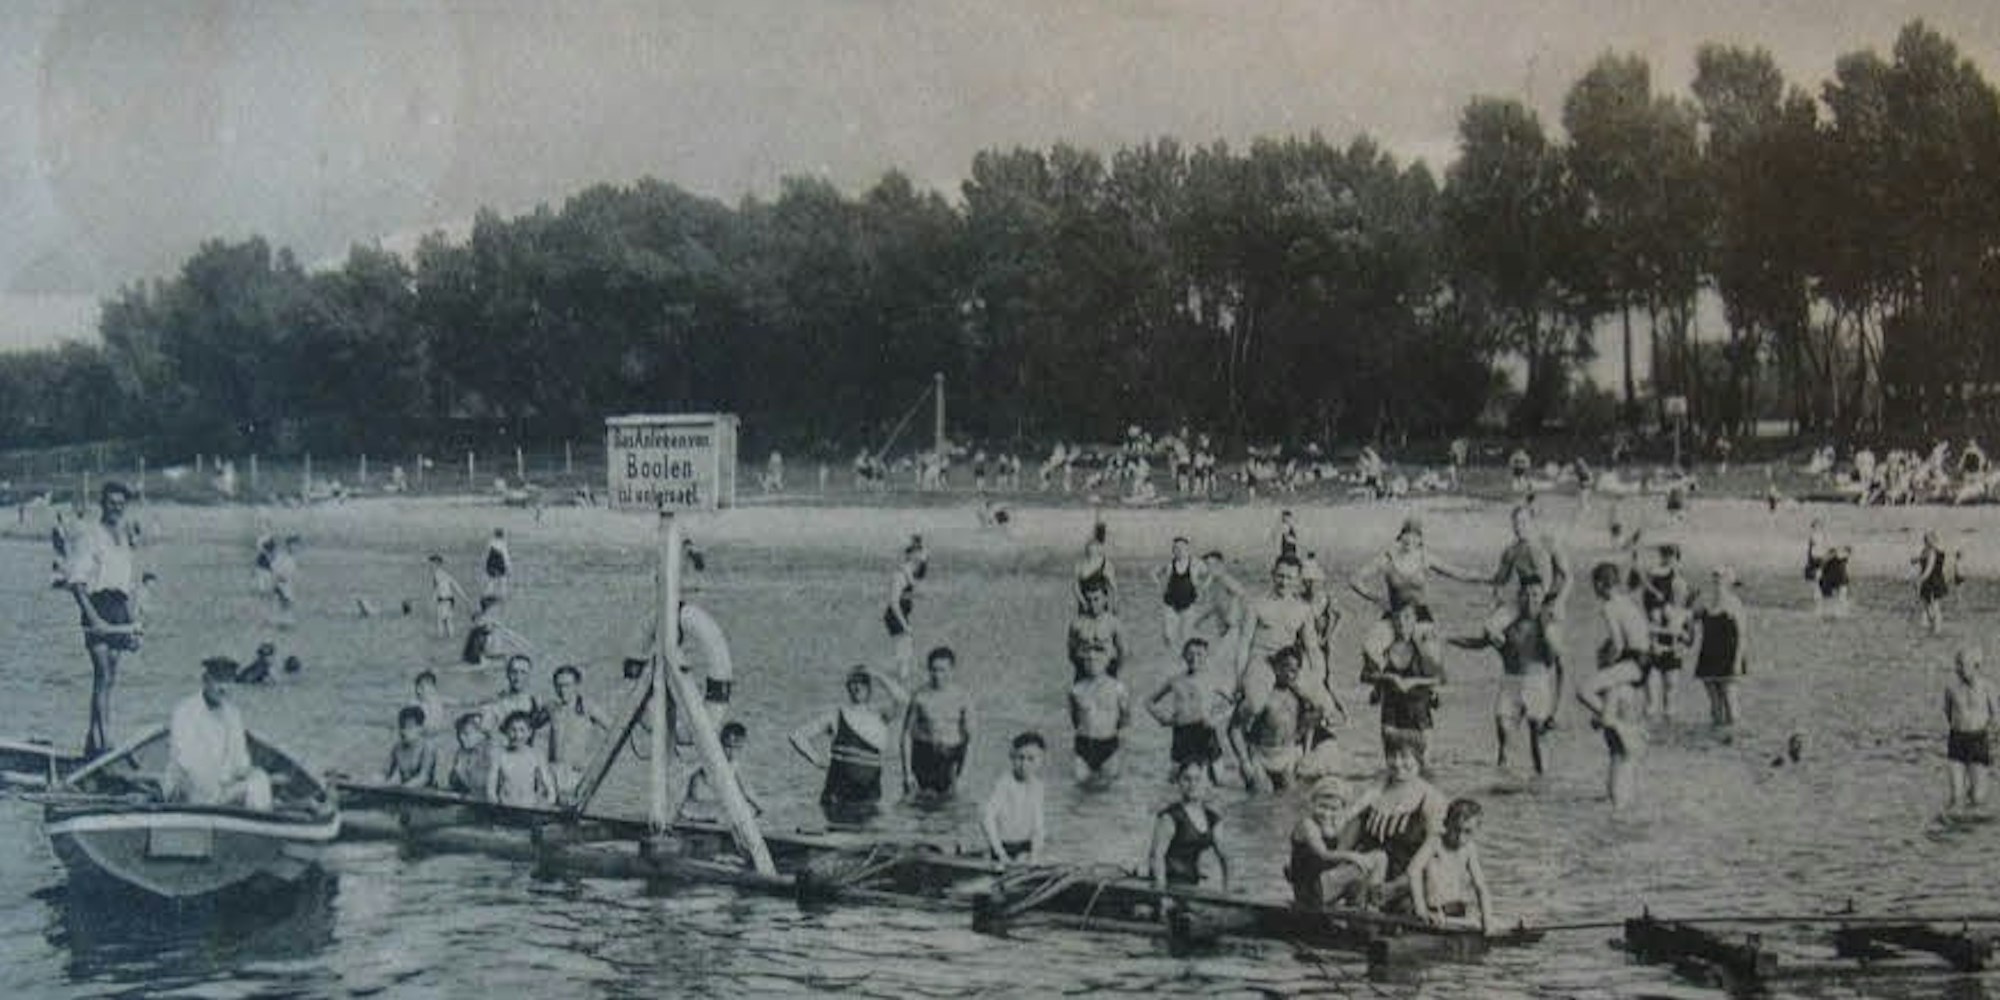 Das städtische Strandbad Rodenkirchen wurde 1912 eröffnet. Nicht alle waren begeistert von dem freizügigen Treiben.